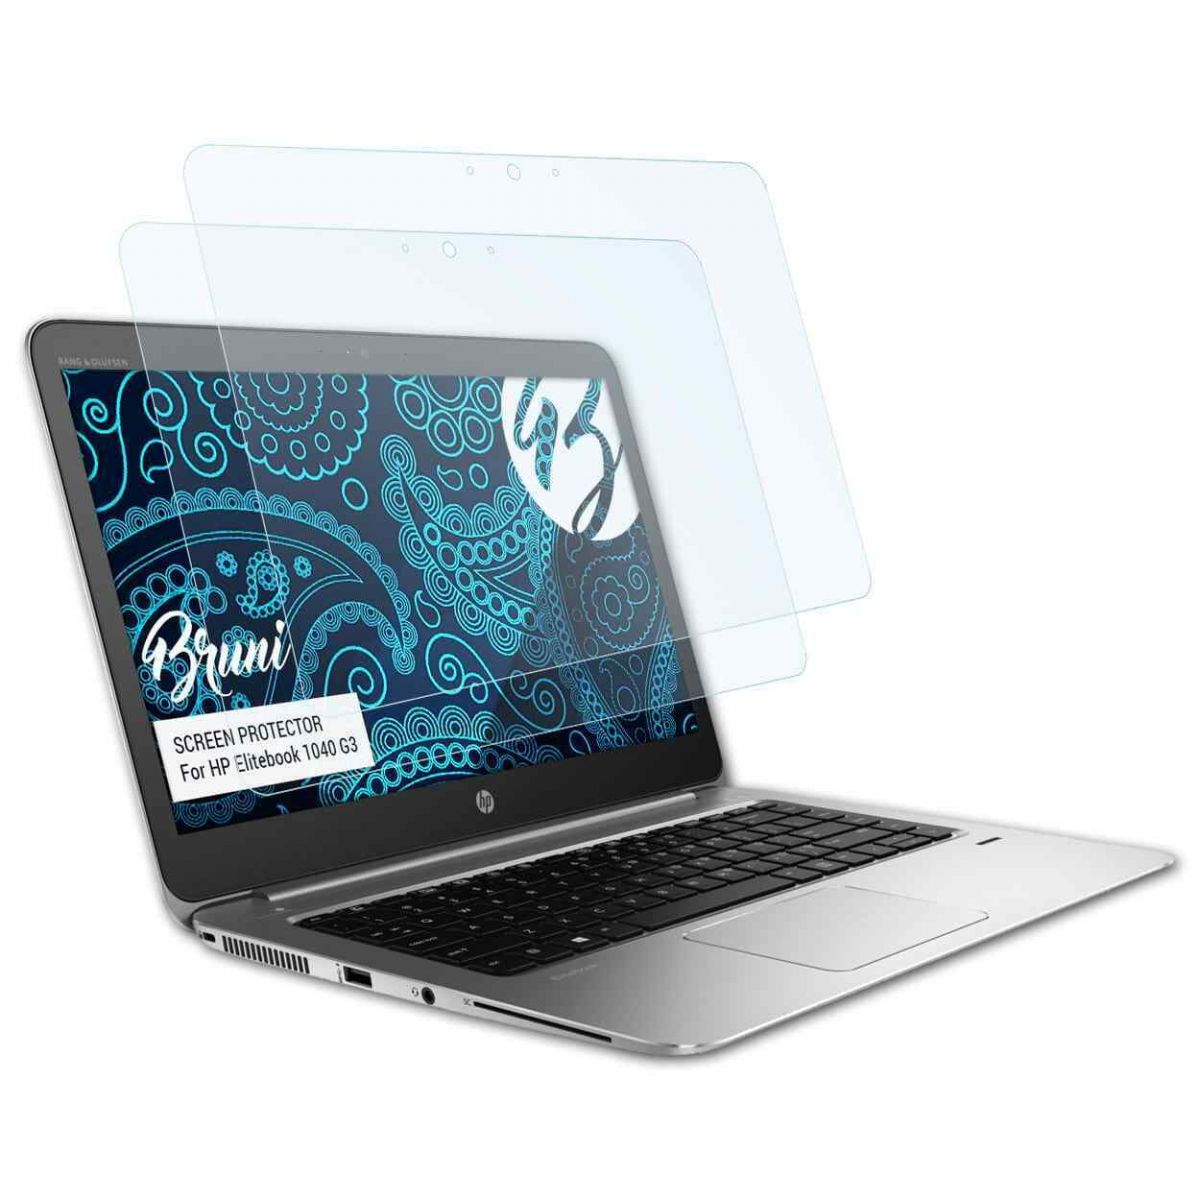 Màn hình HP EliteBook Folio 1040 G3 độ phân giải QHD